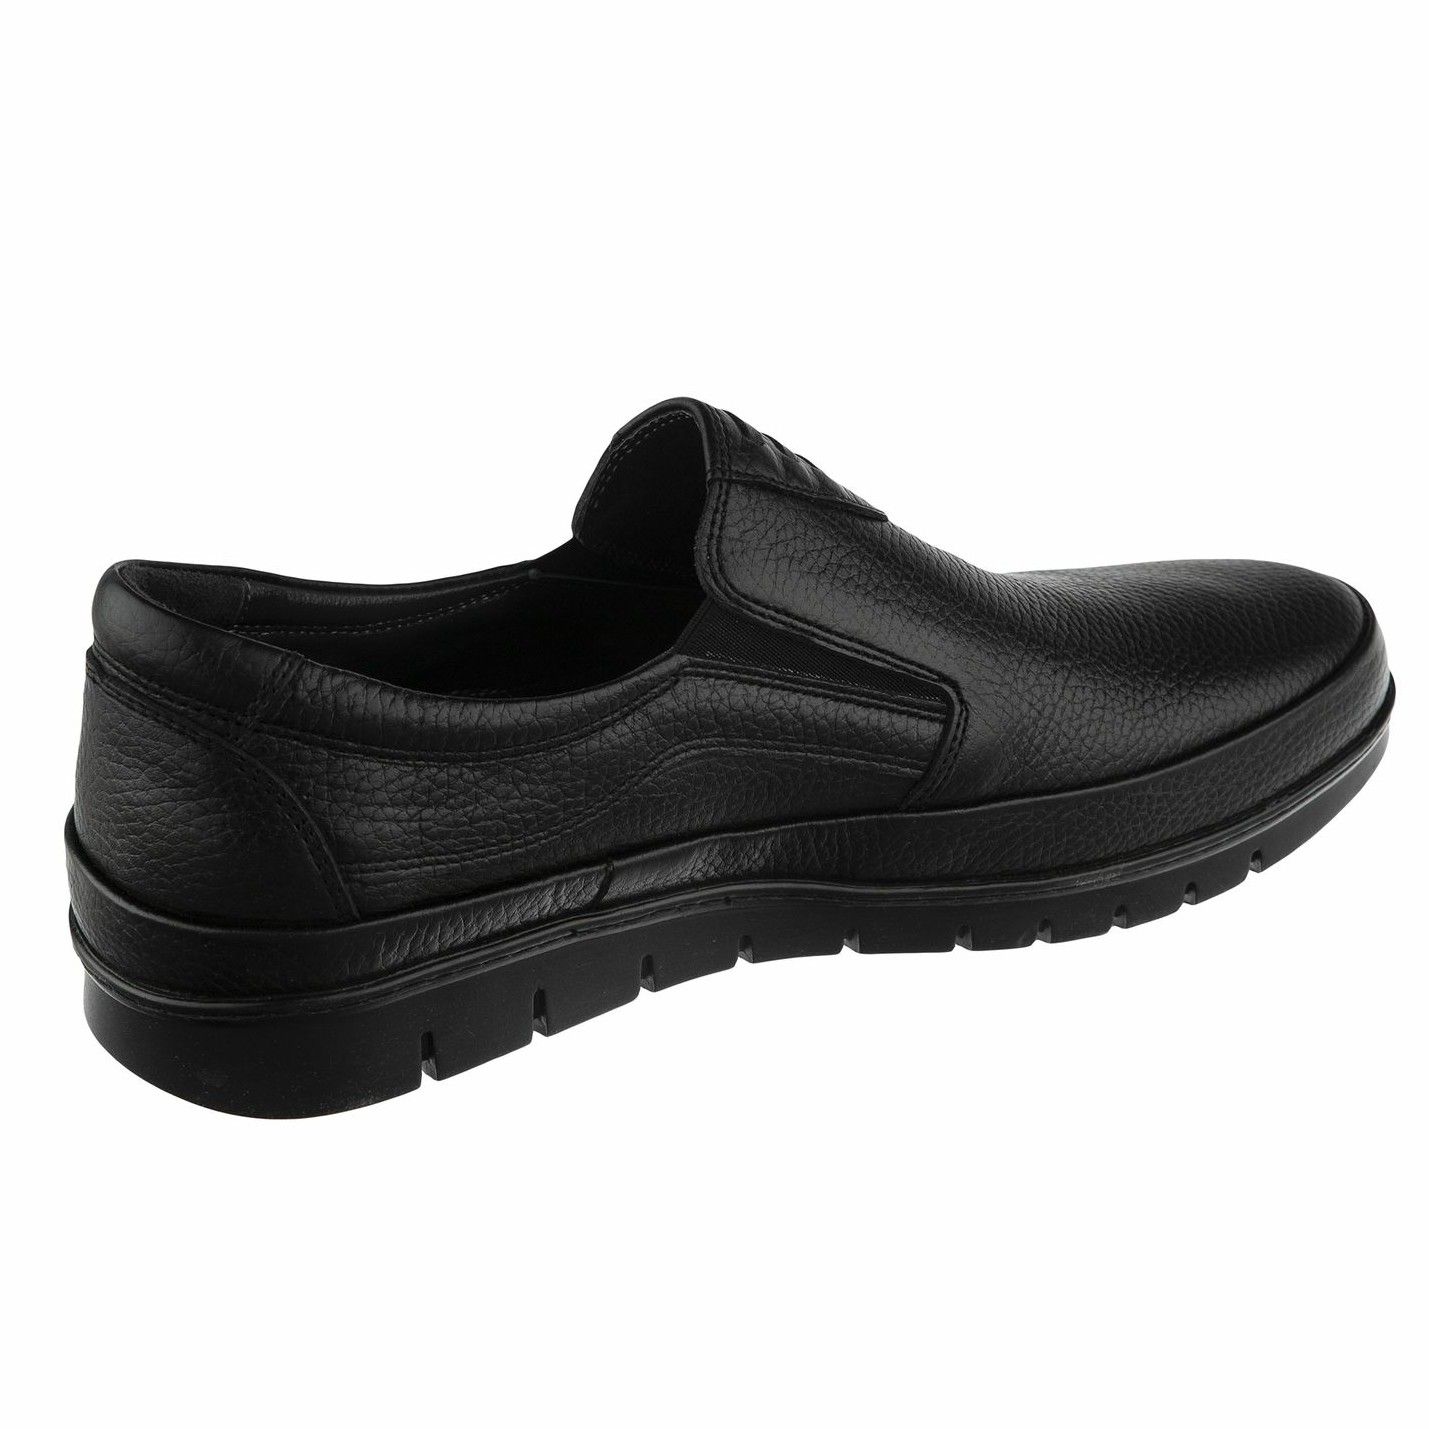 کفش روزمره مردانه سوته مدل چرم طبیعی کد F503101 -  - 3